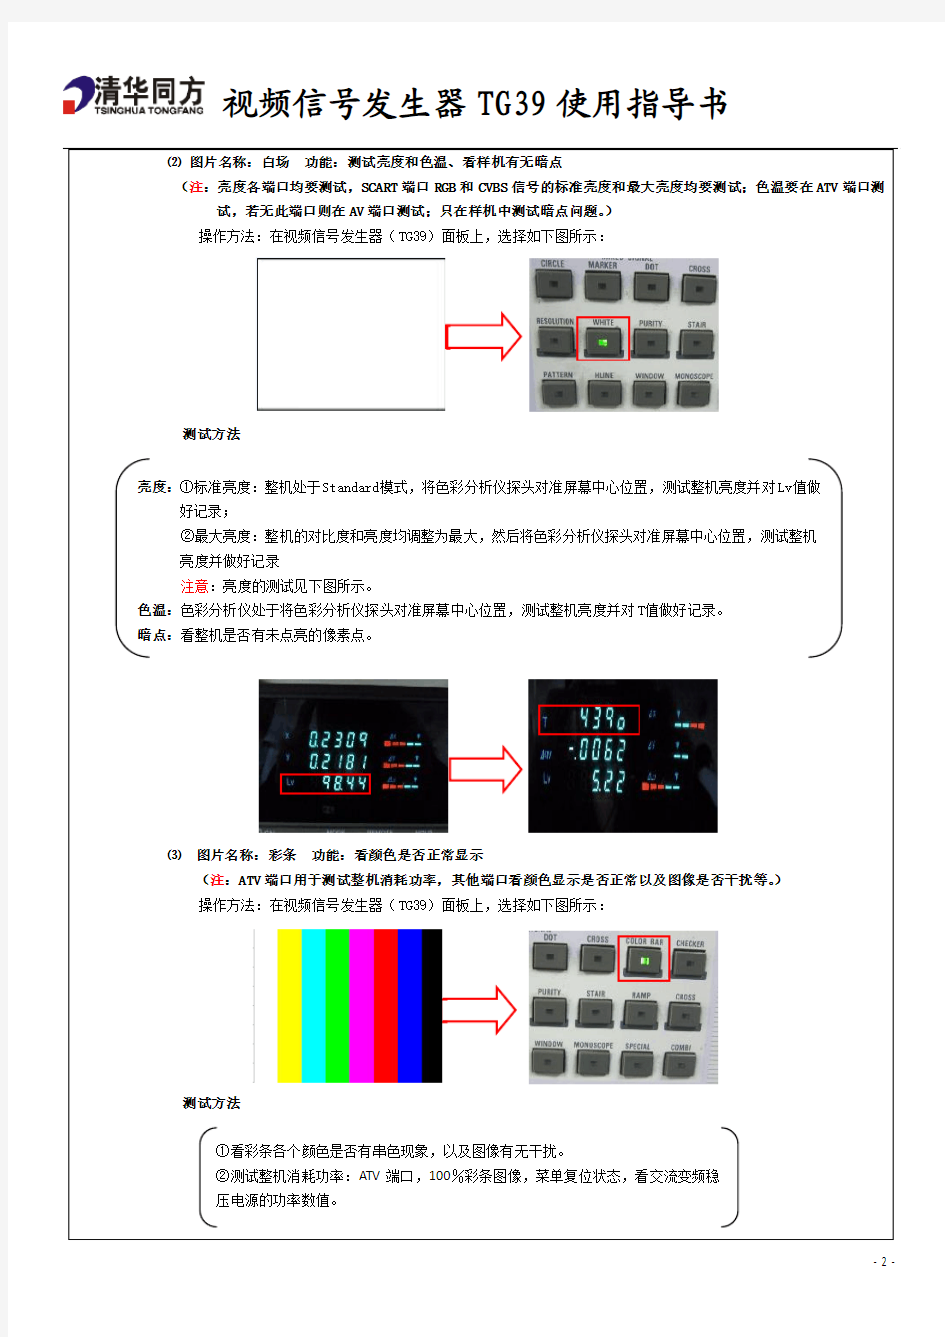 视频信号发生器TG39指导书A1版